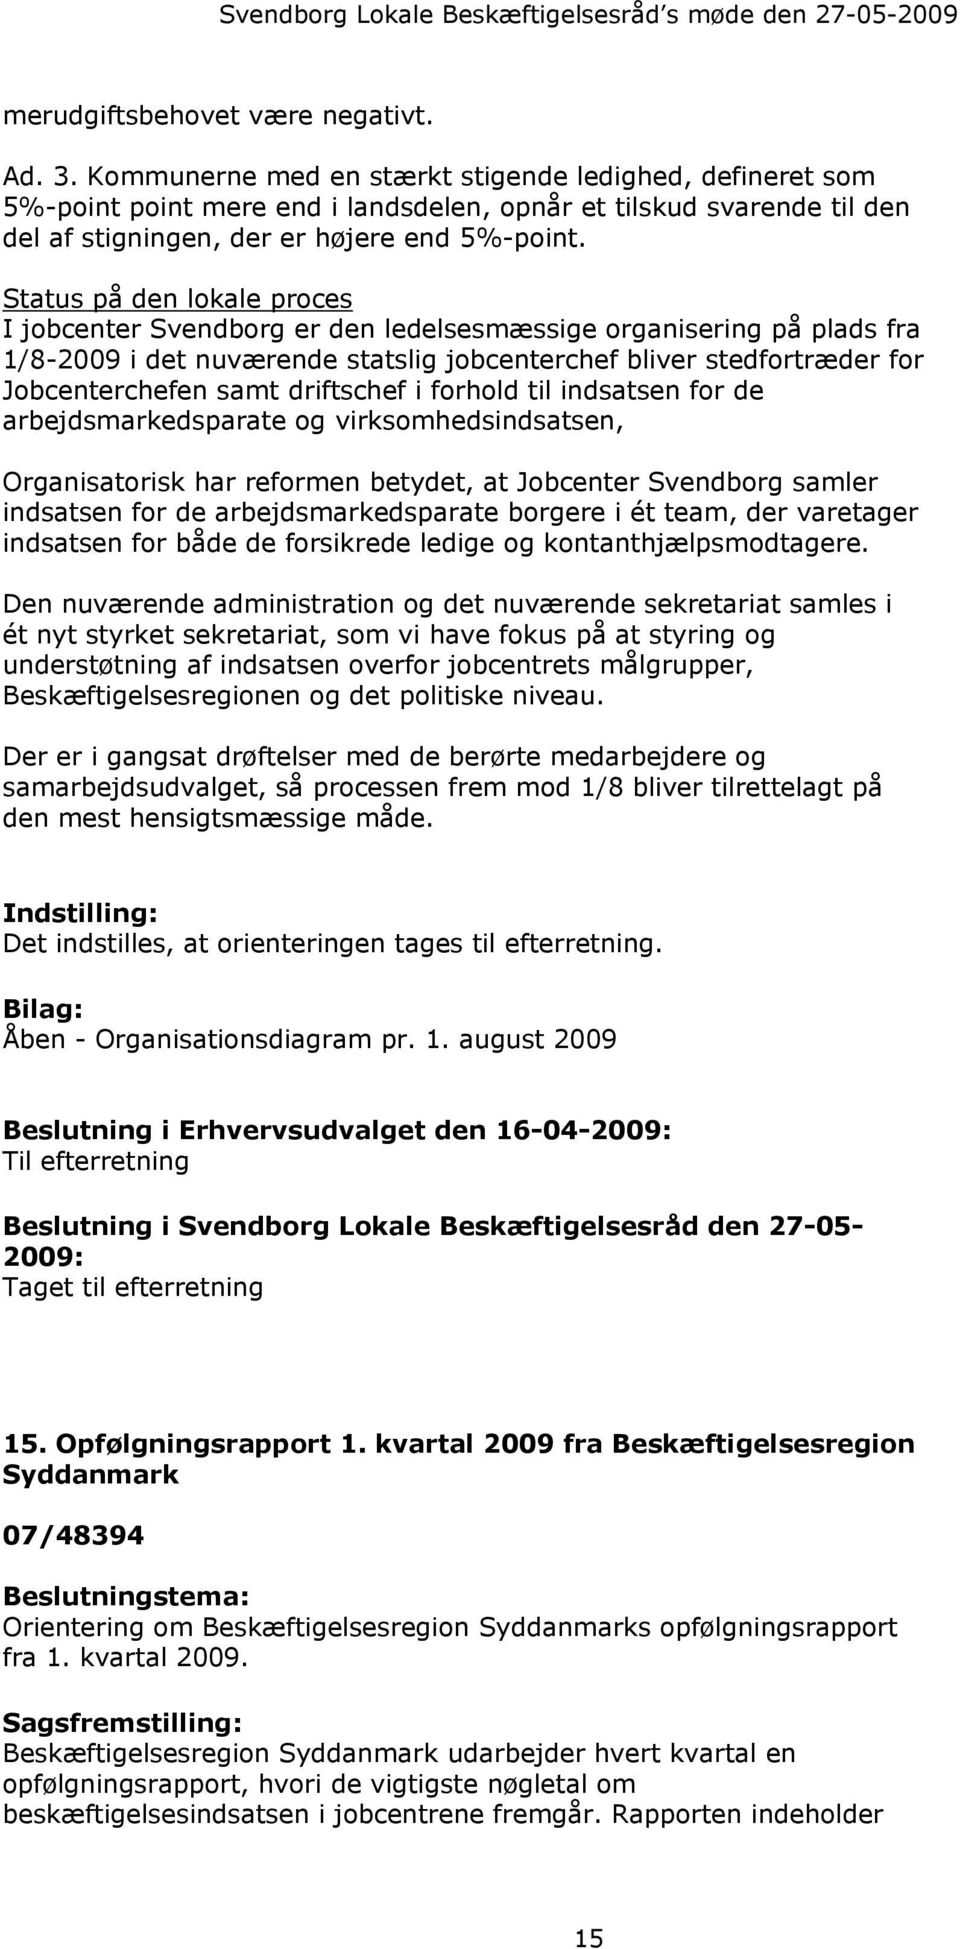 Status på den lokale proces I jobcenter Svendborg er den ledelsesmæssige organisering på plads fra 1/8-2009 i det nuværende statslig jobcenterchef bliver stedfortræder for Jobcenterchefen samt